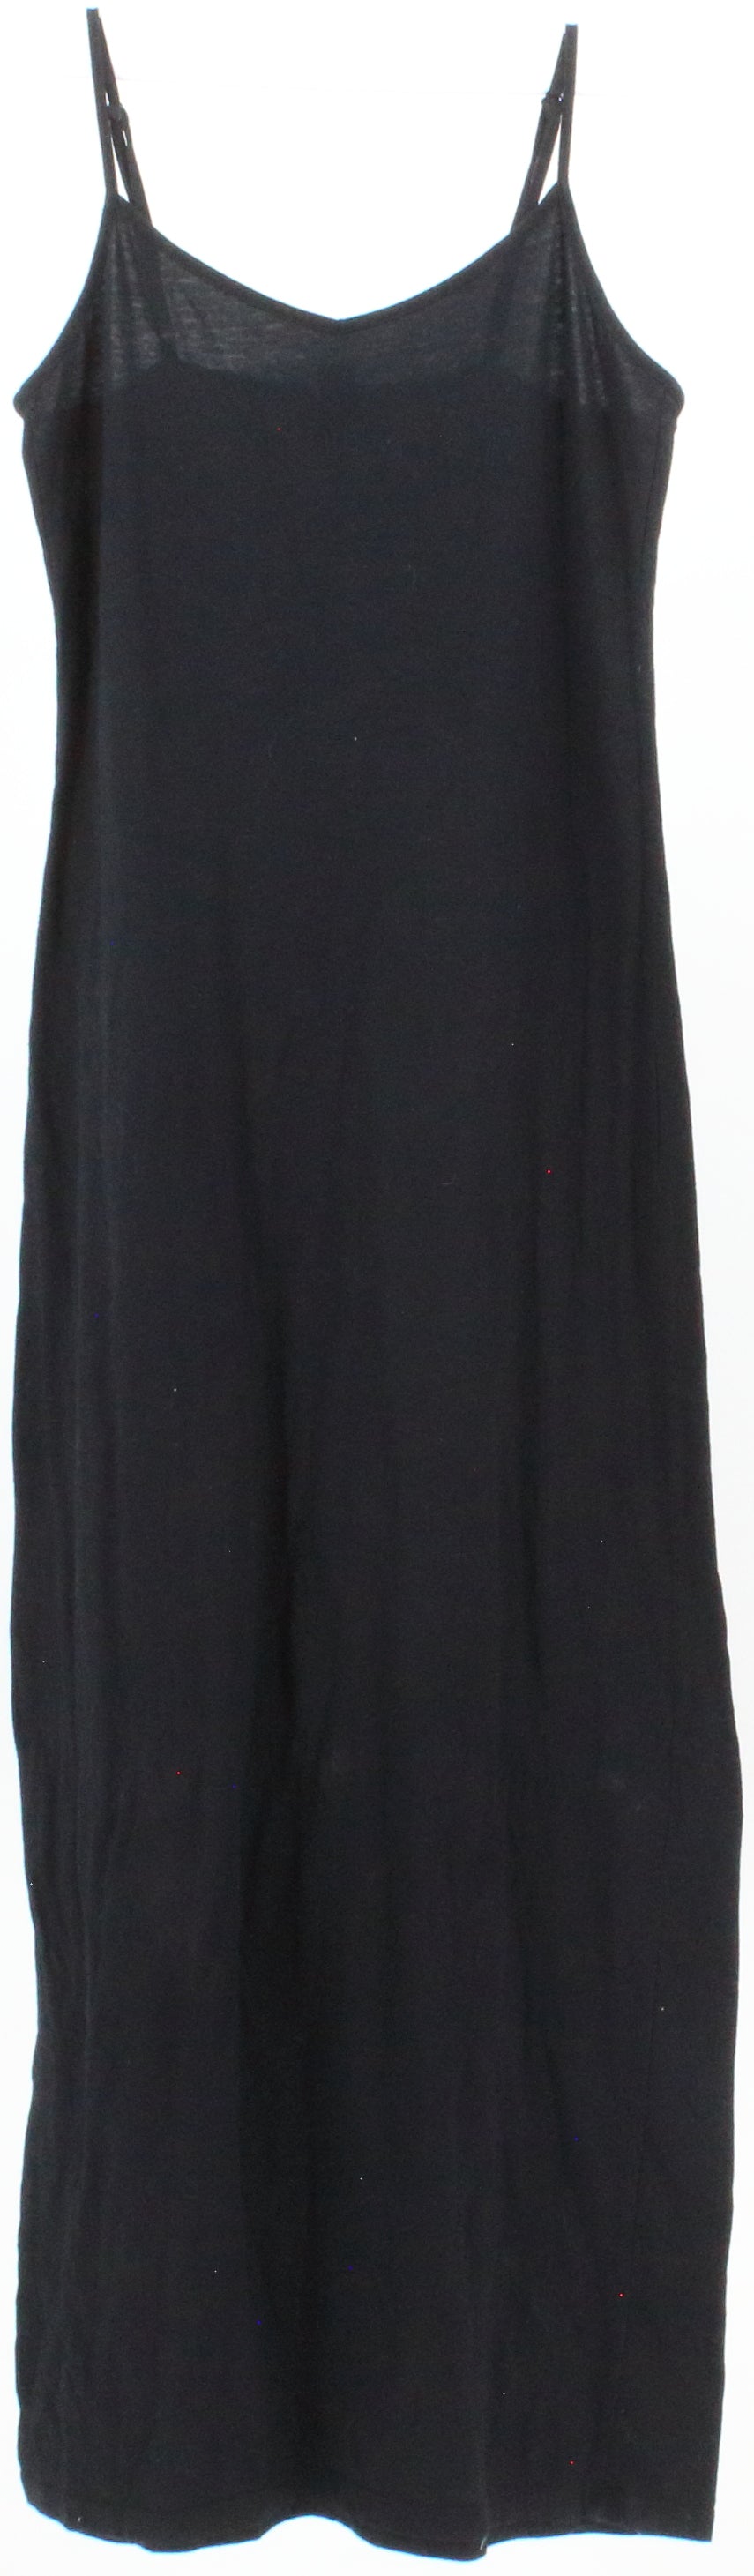 Forever 21 Black Sleeveless Basic Long Dress